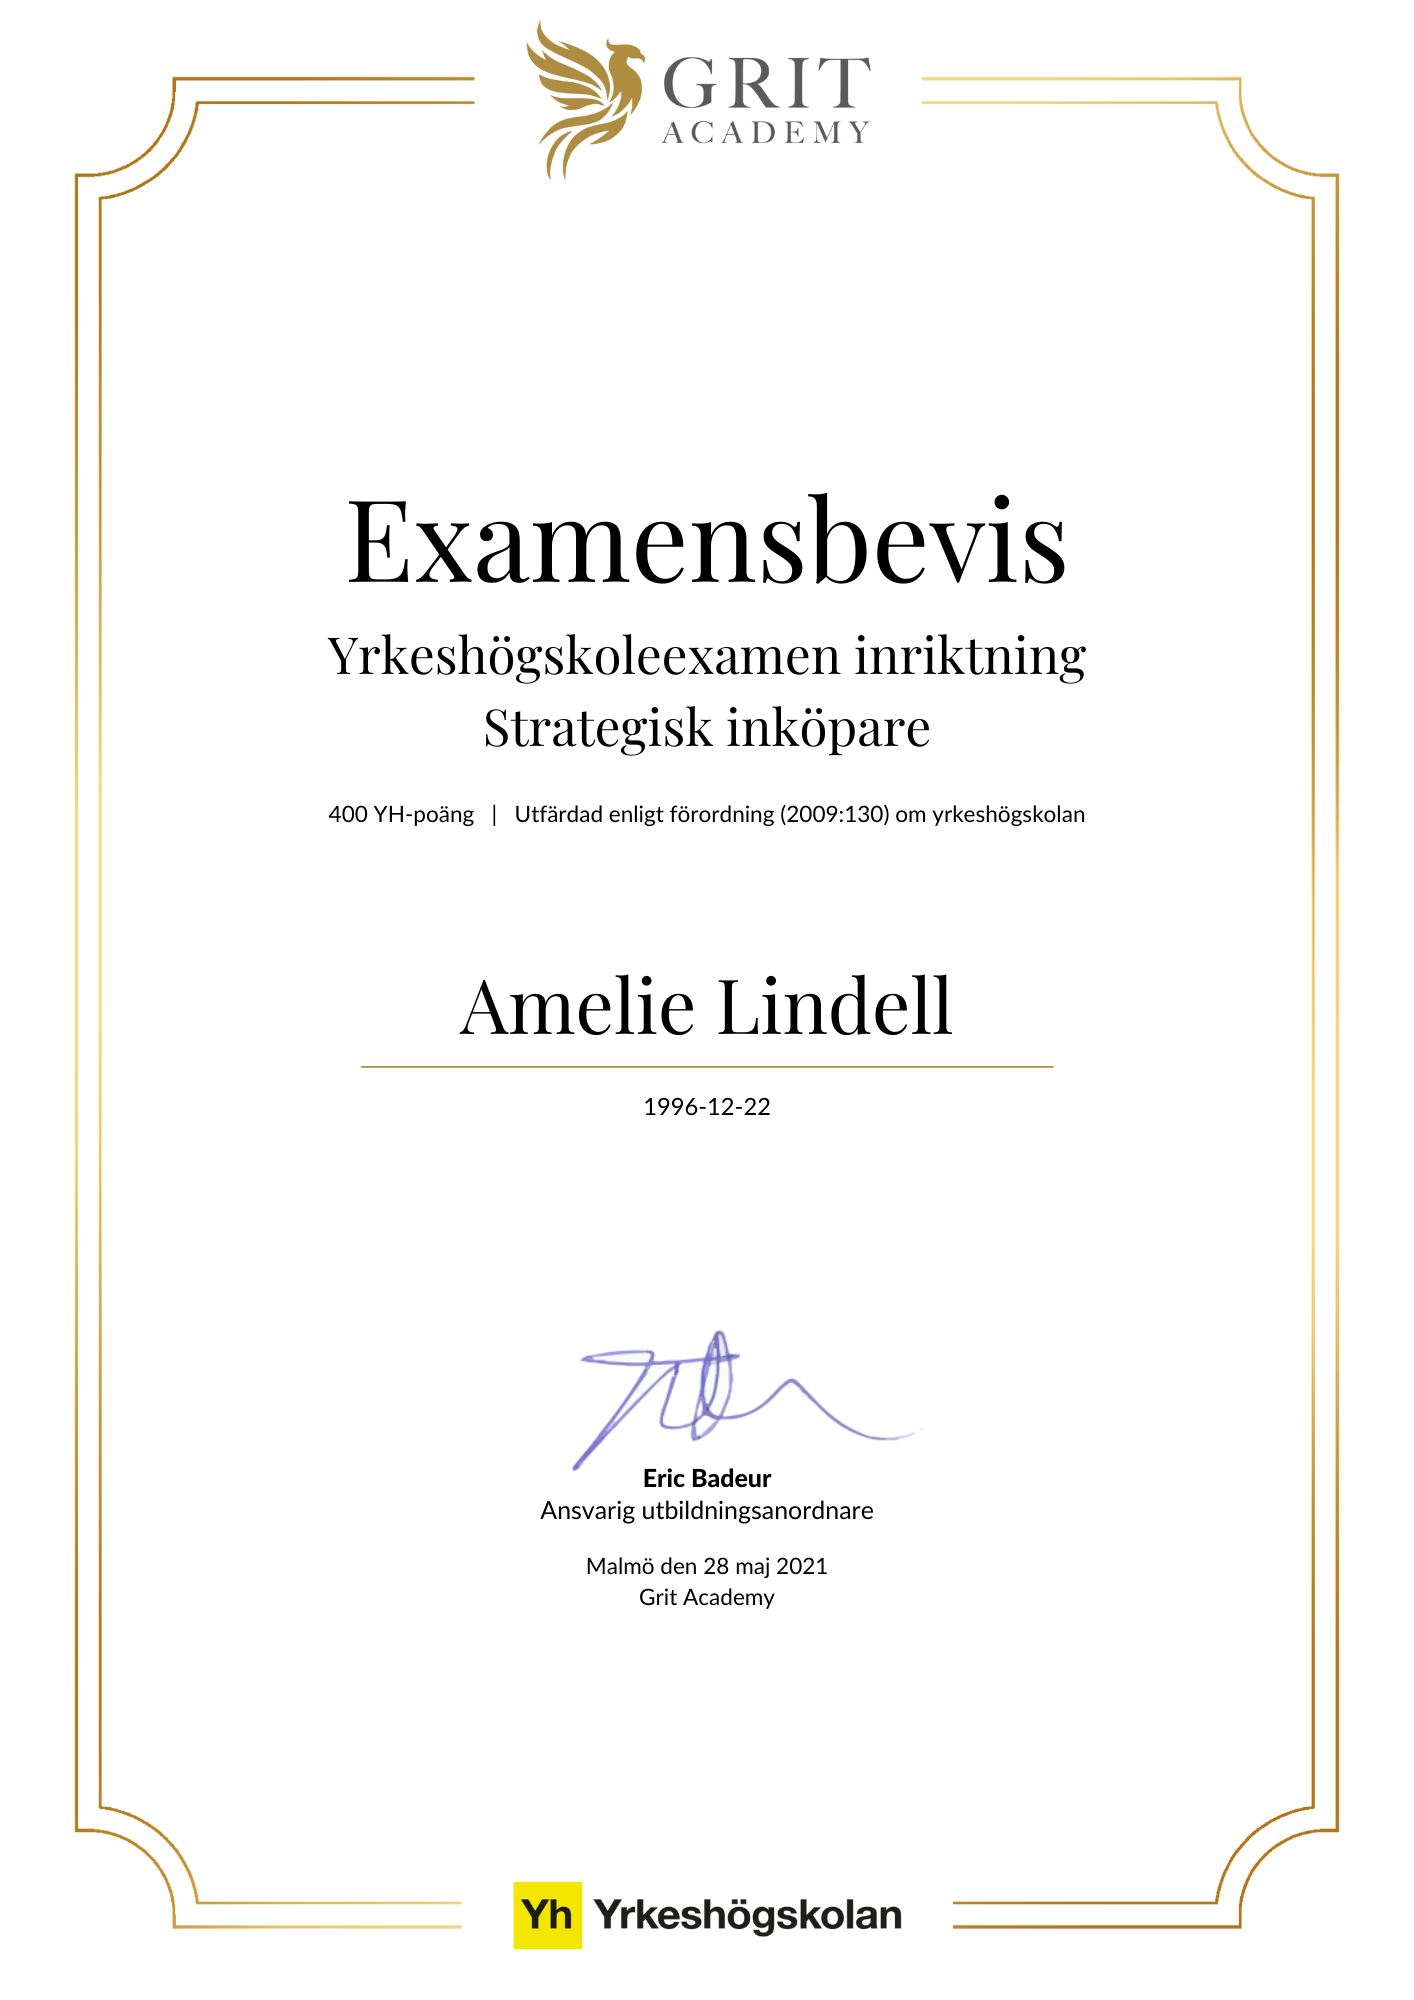 Examensbevis Amelie Lindell - 1